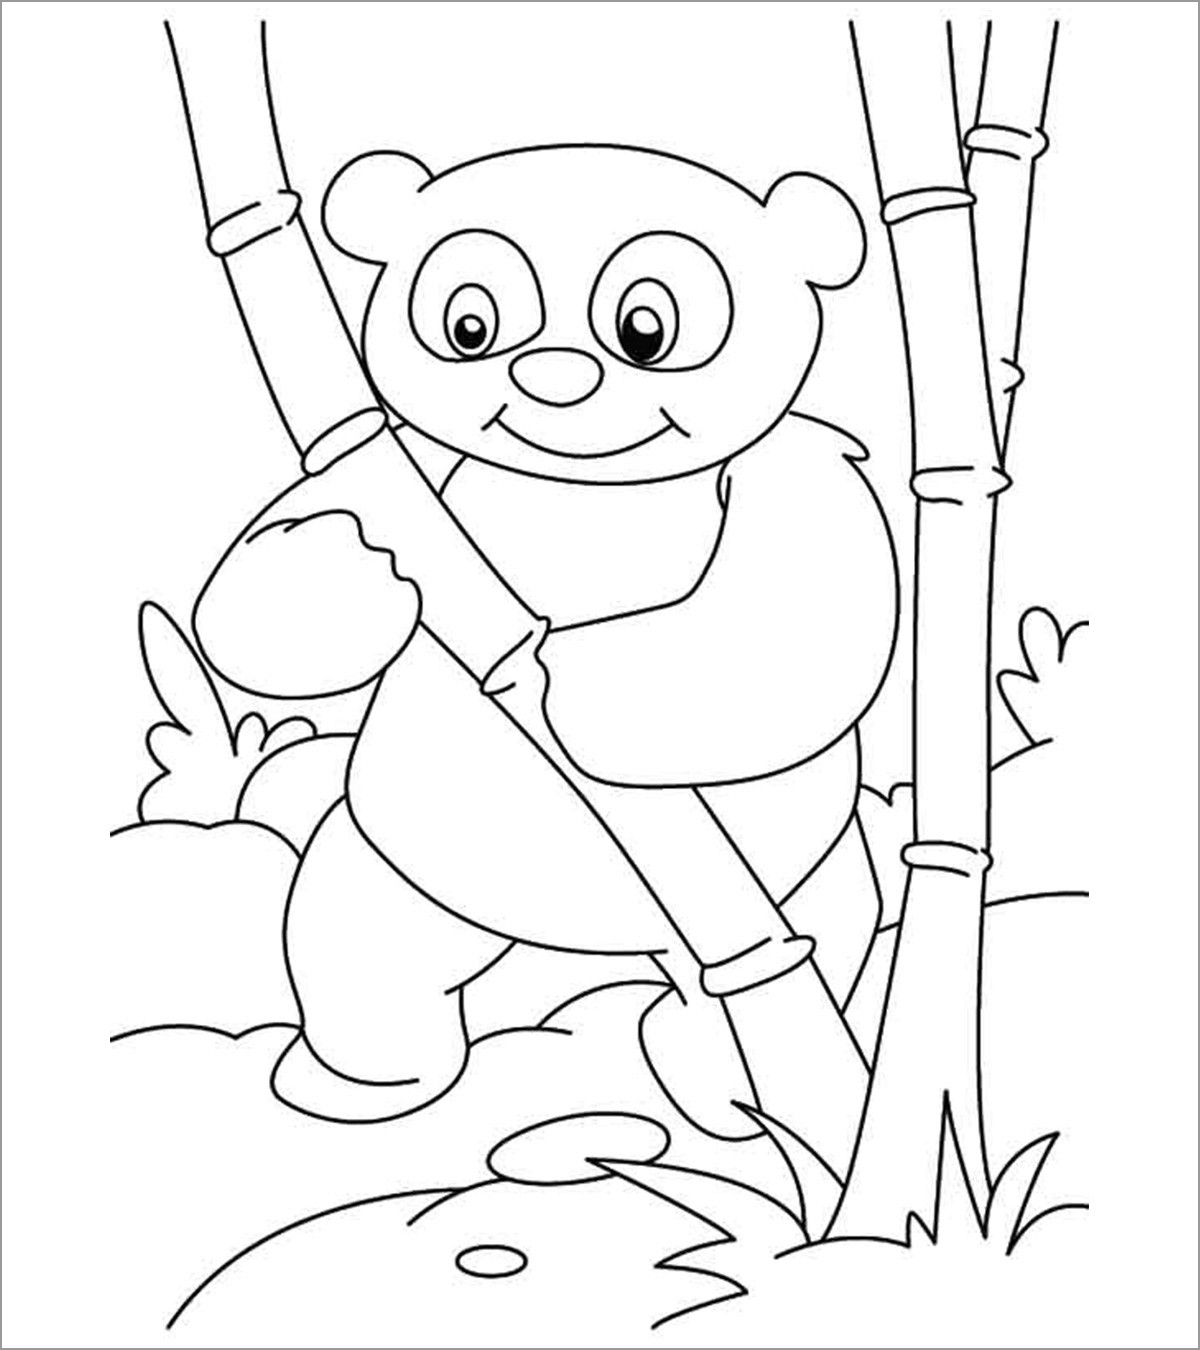 Panda and Bamboo Coloring Page